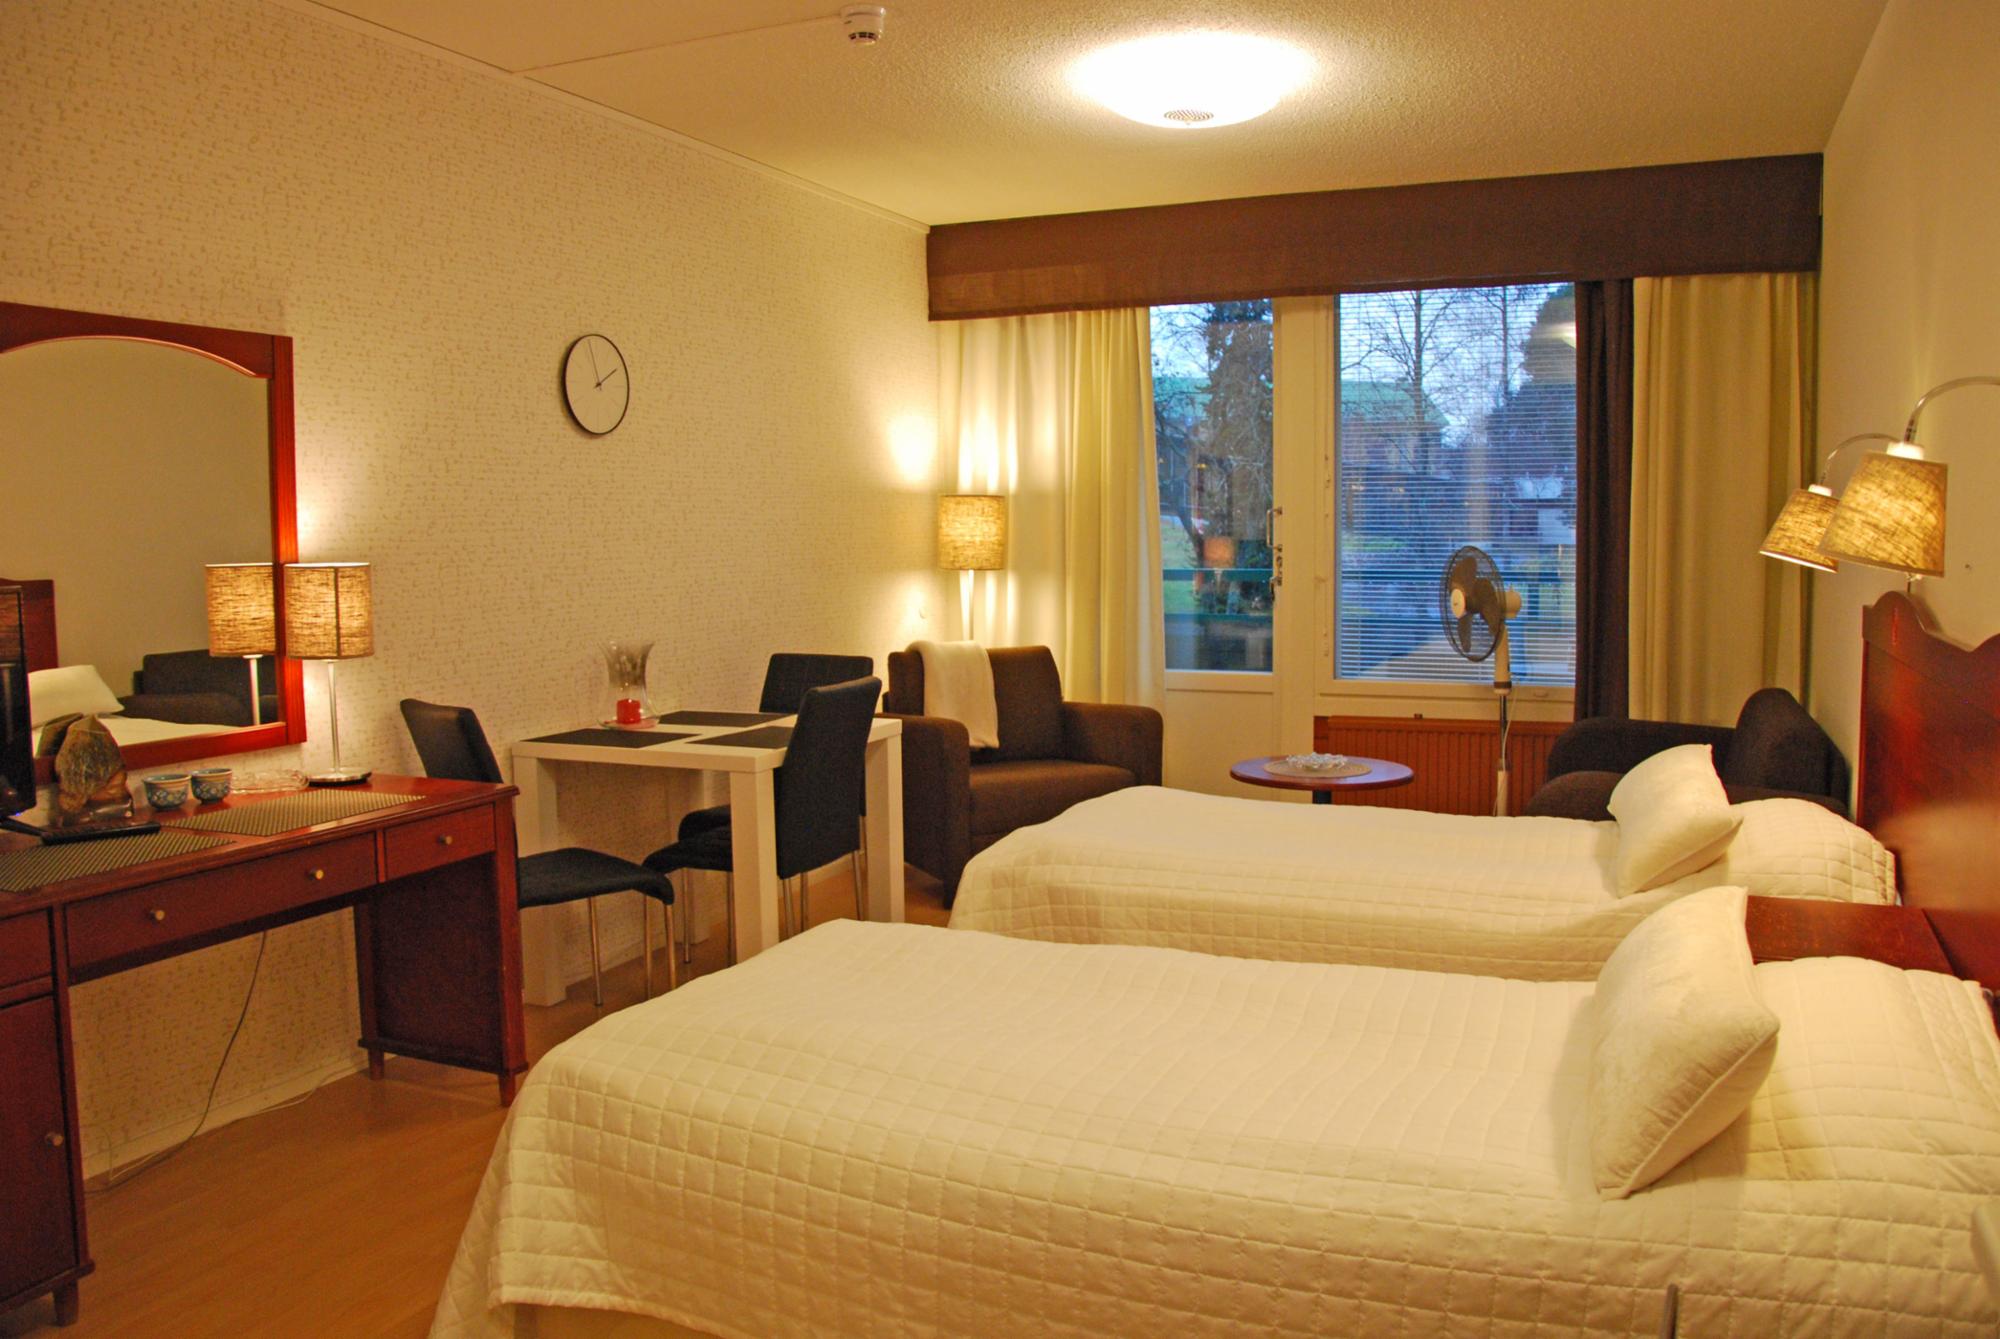 *Kylpylä-Hotelli 239